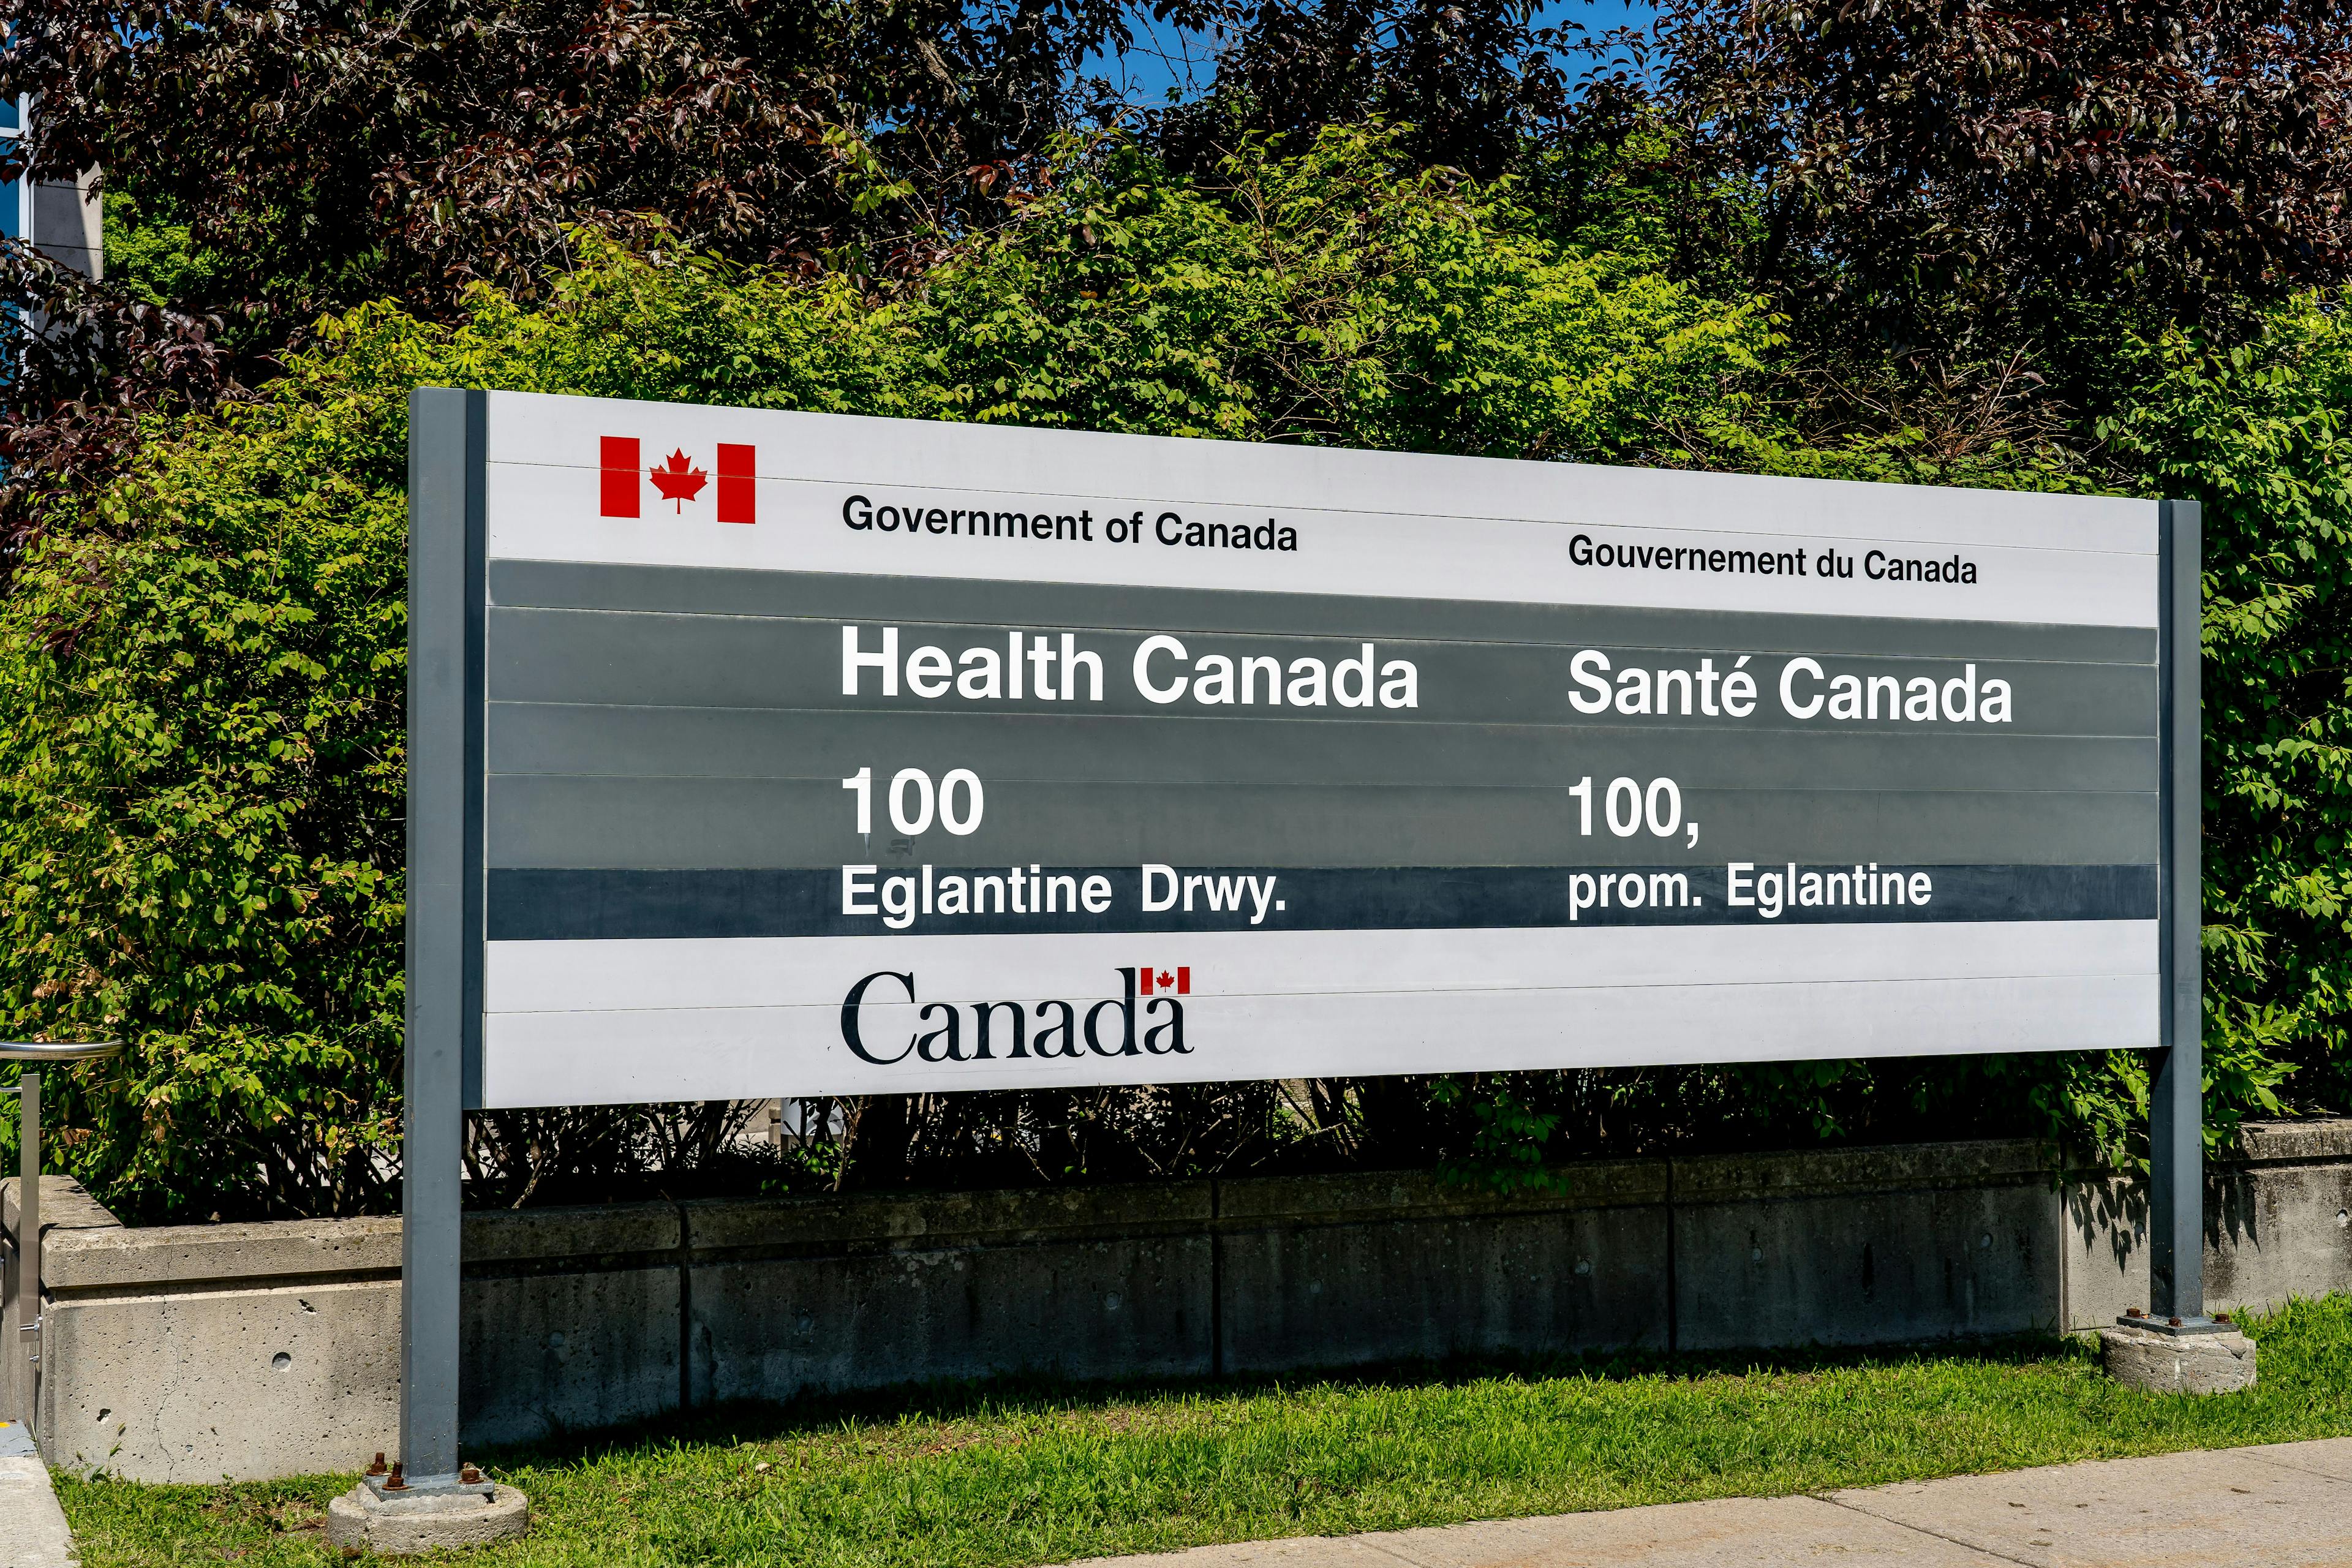 Health Canada sign at 100 Eglantine Drwy office in Ottawa